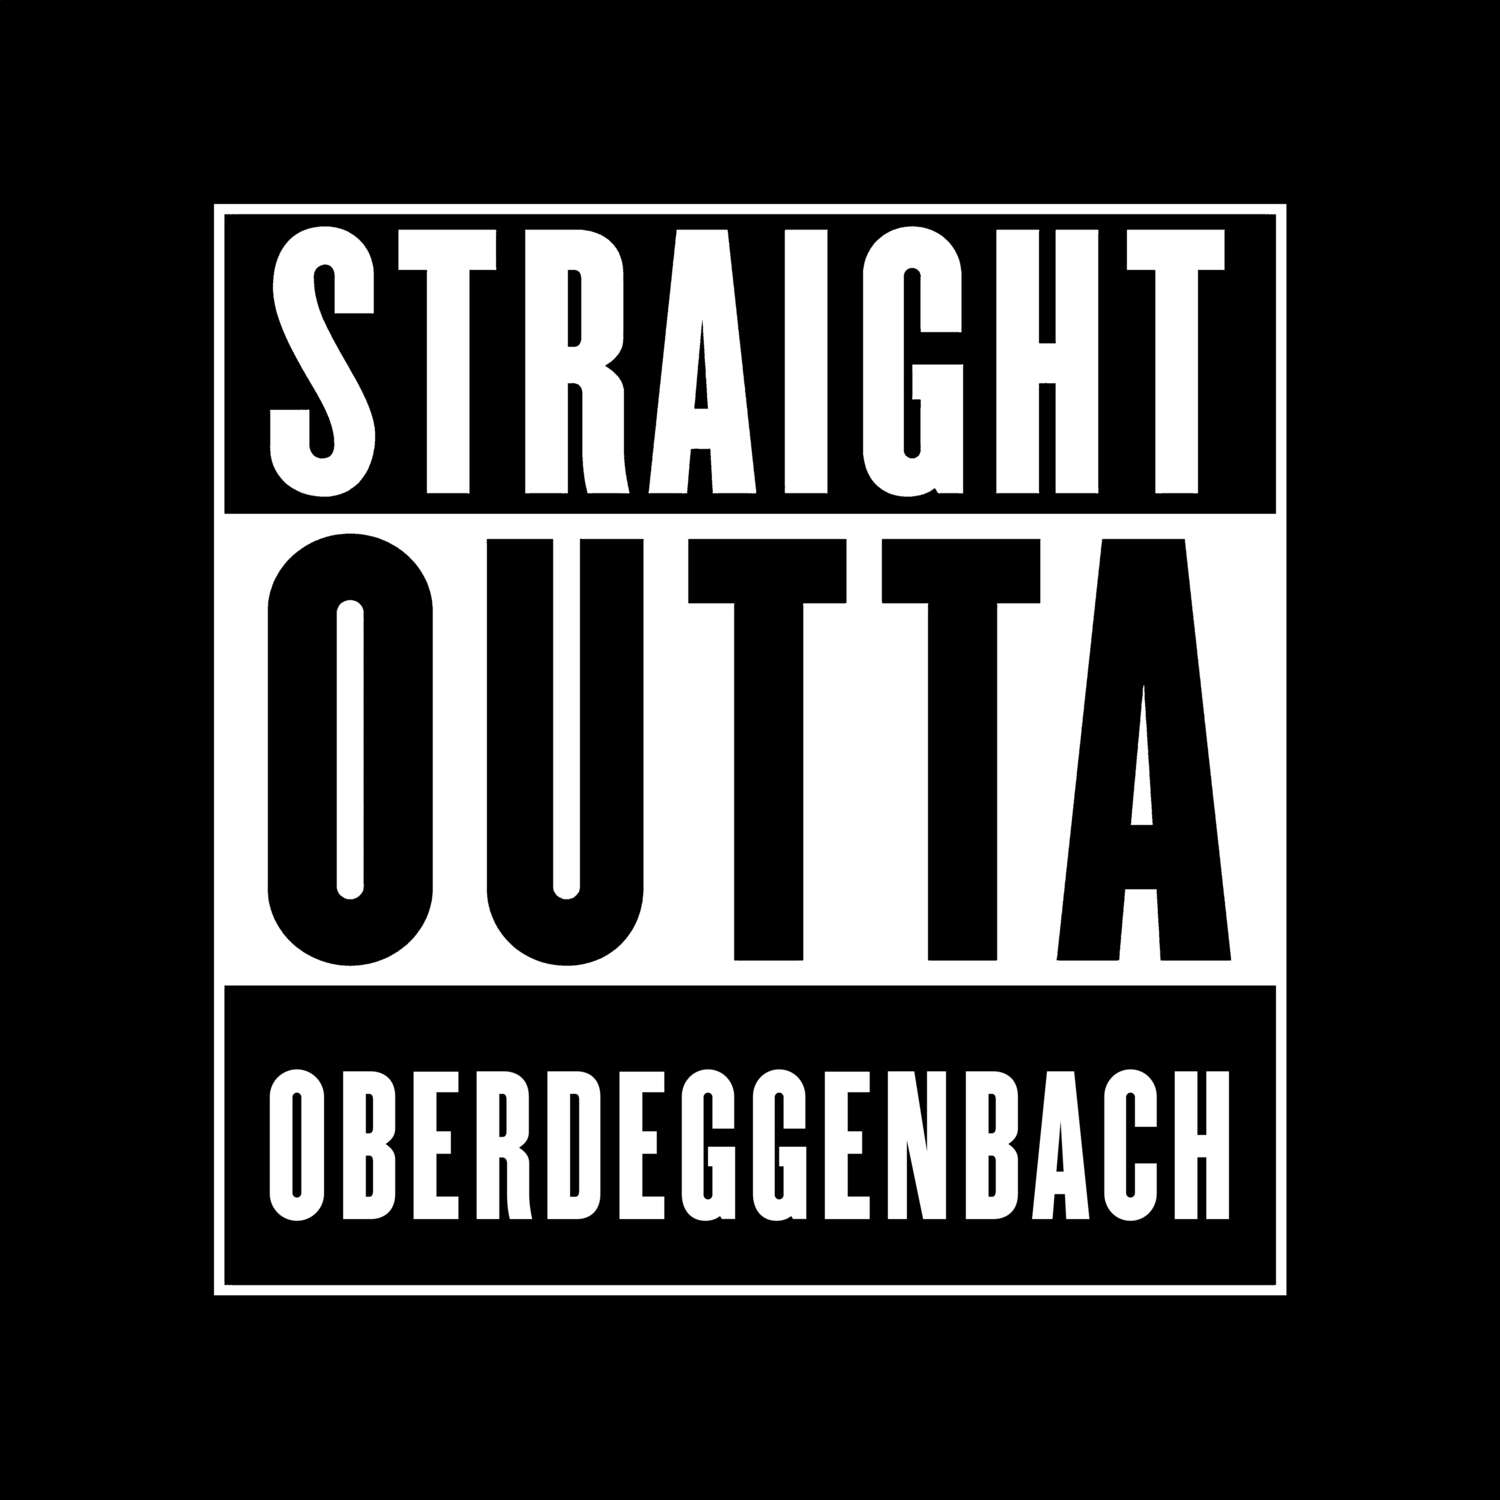 Oberdeggenbach T-Shirt »Straight Outta«